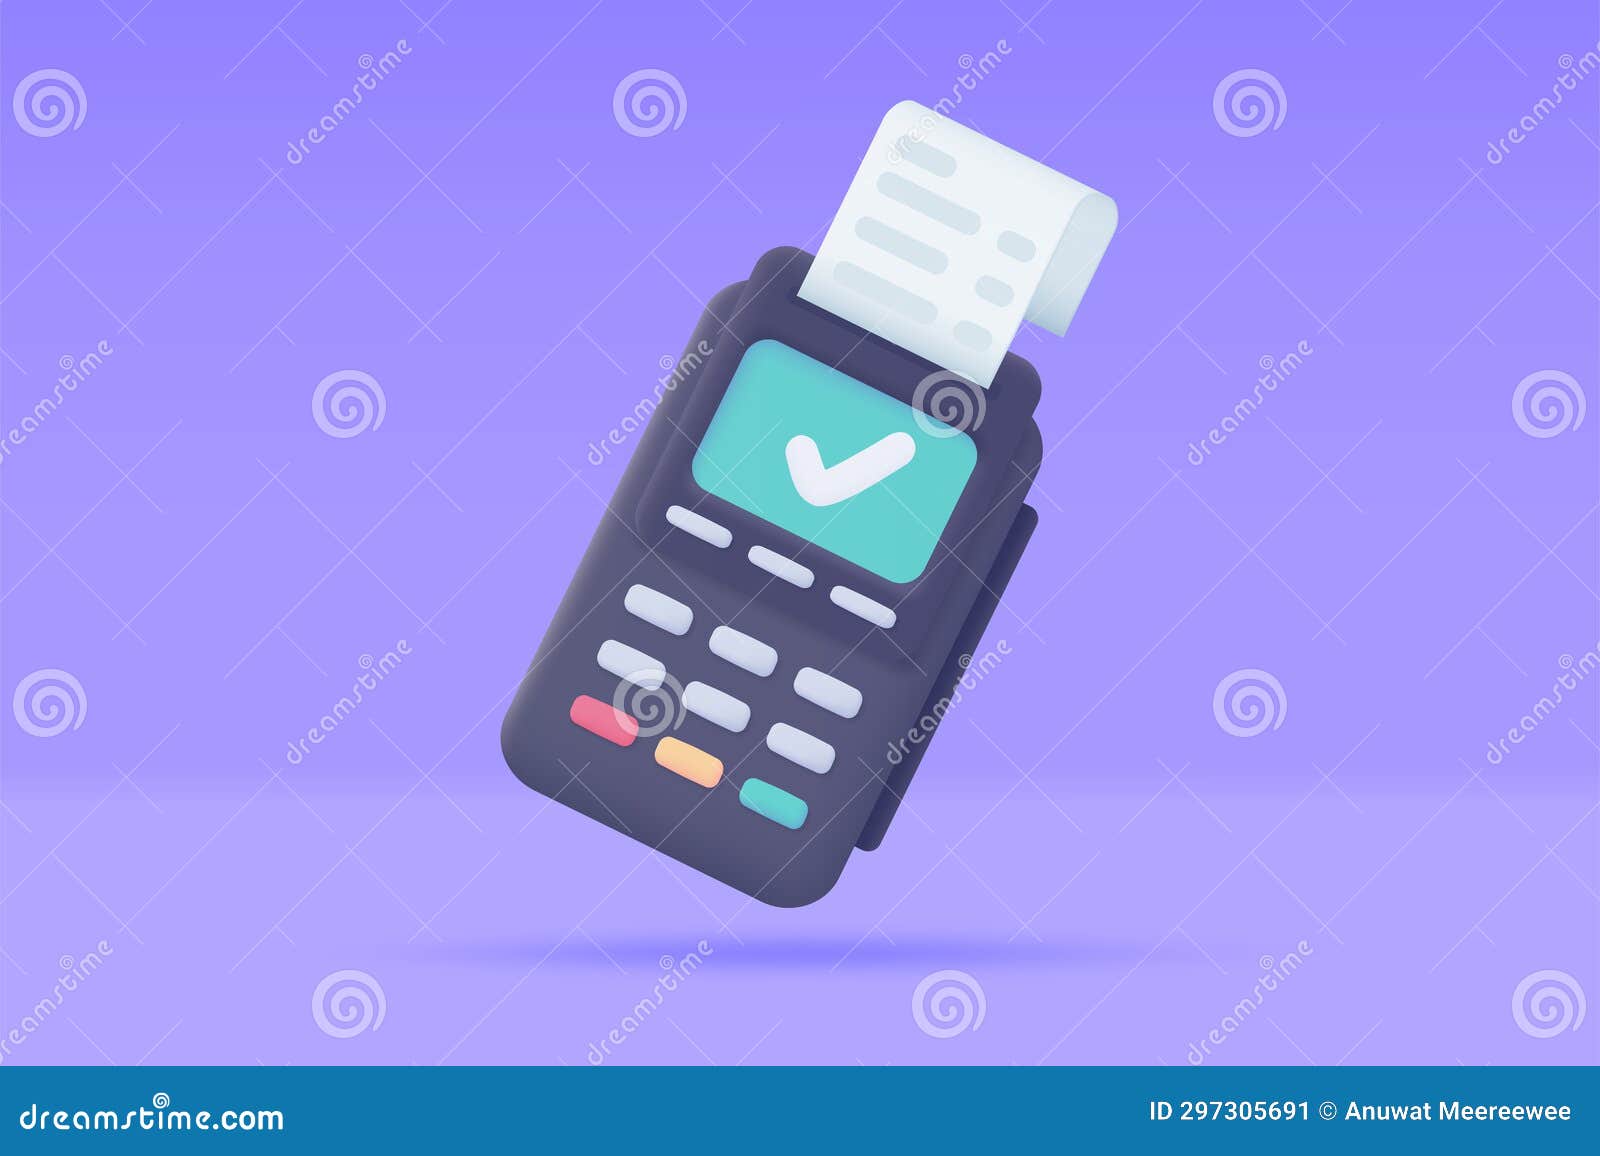 Credit Card Swipe Machine 3D model